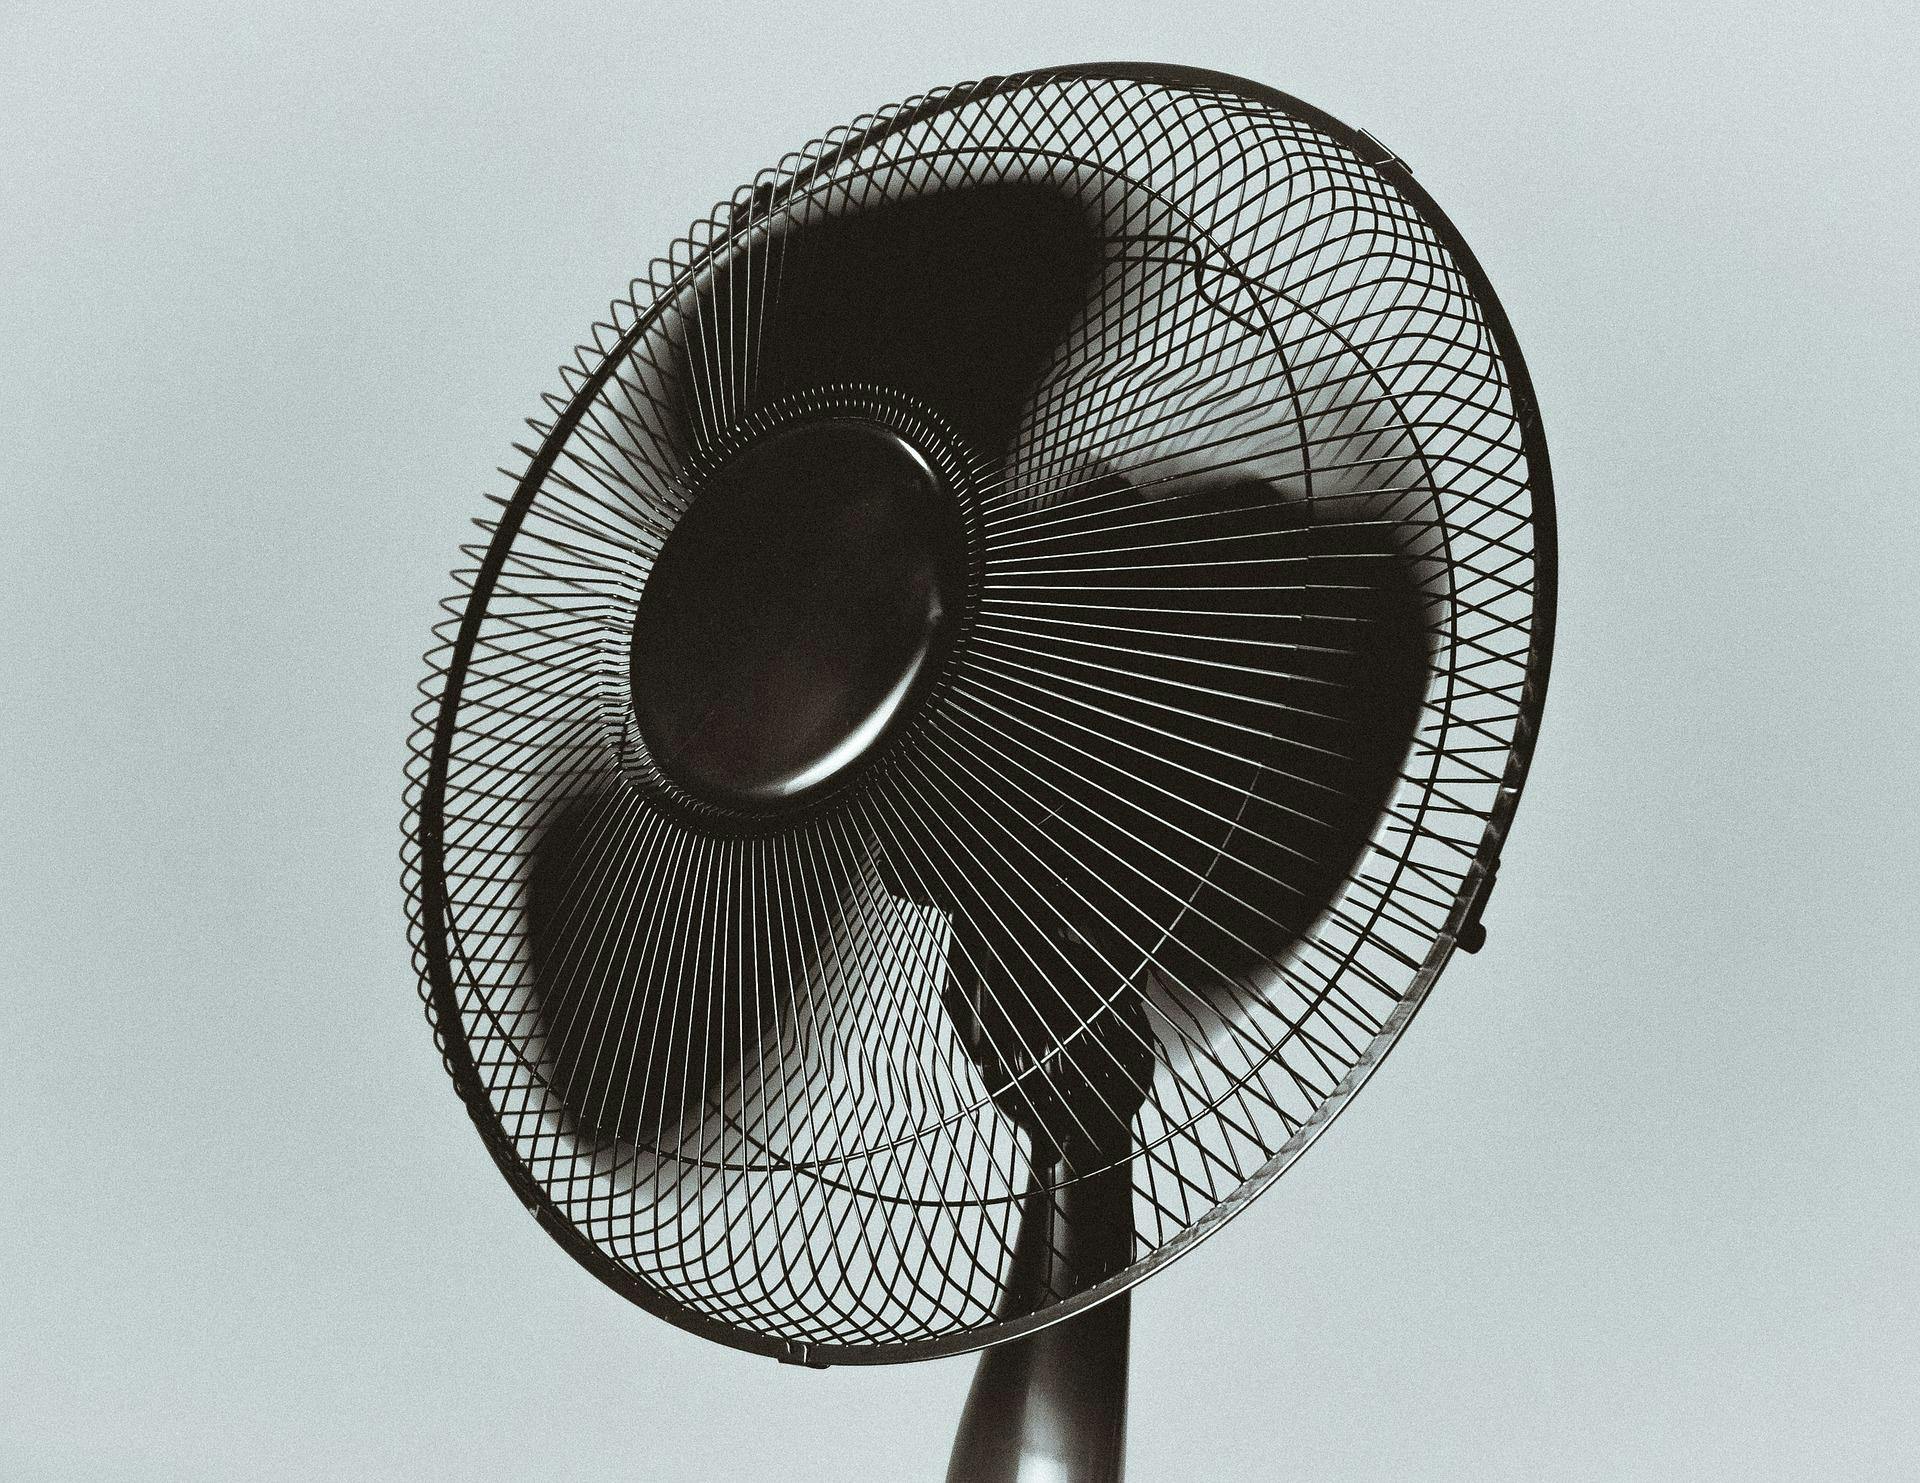 Just a regular old fan.